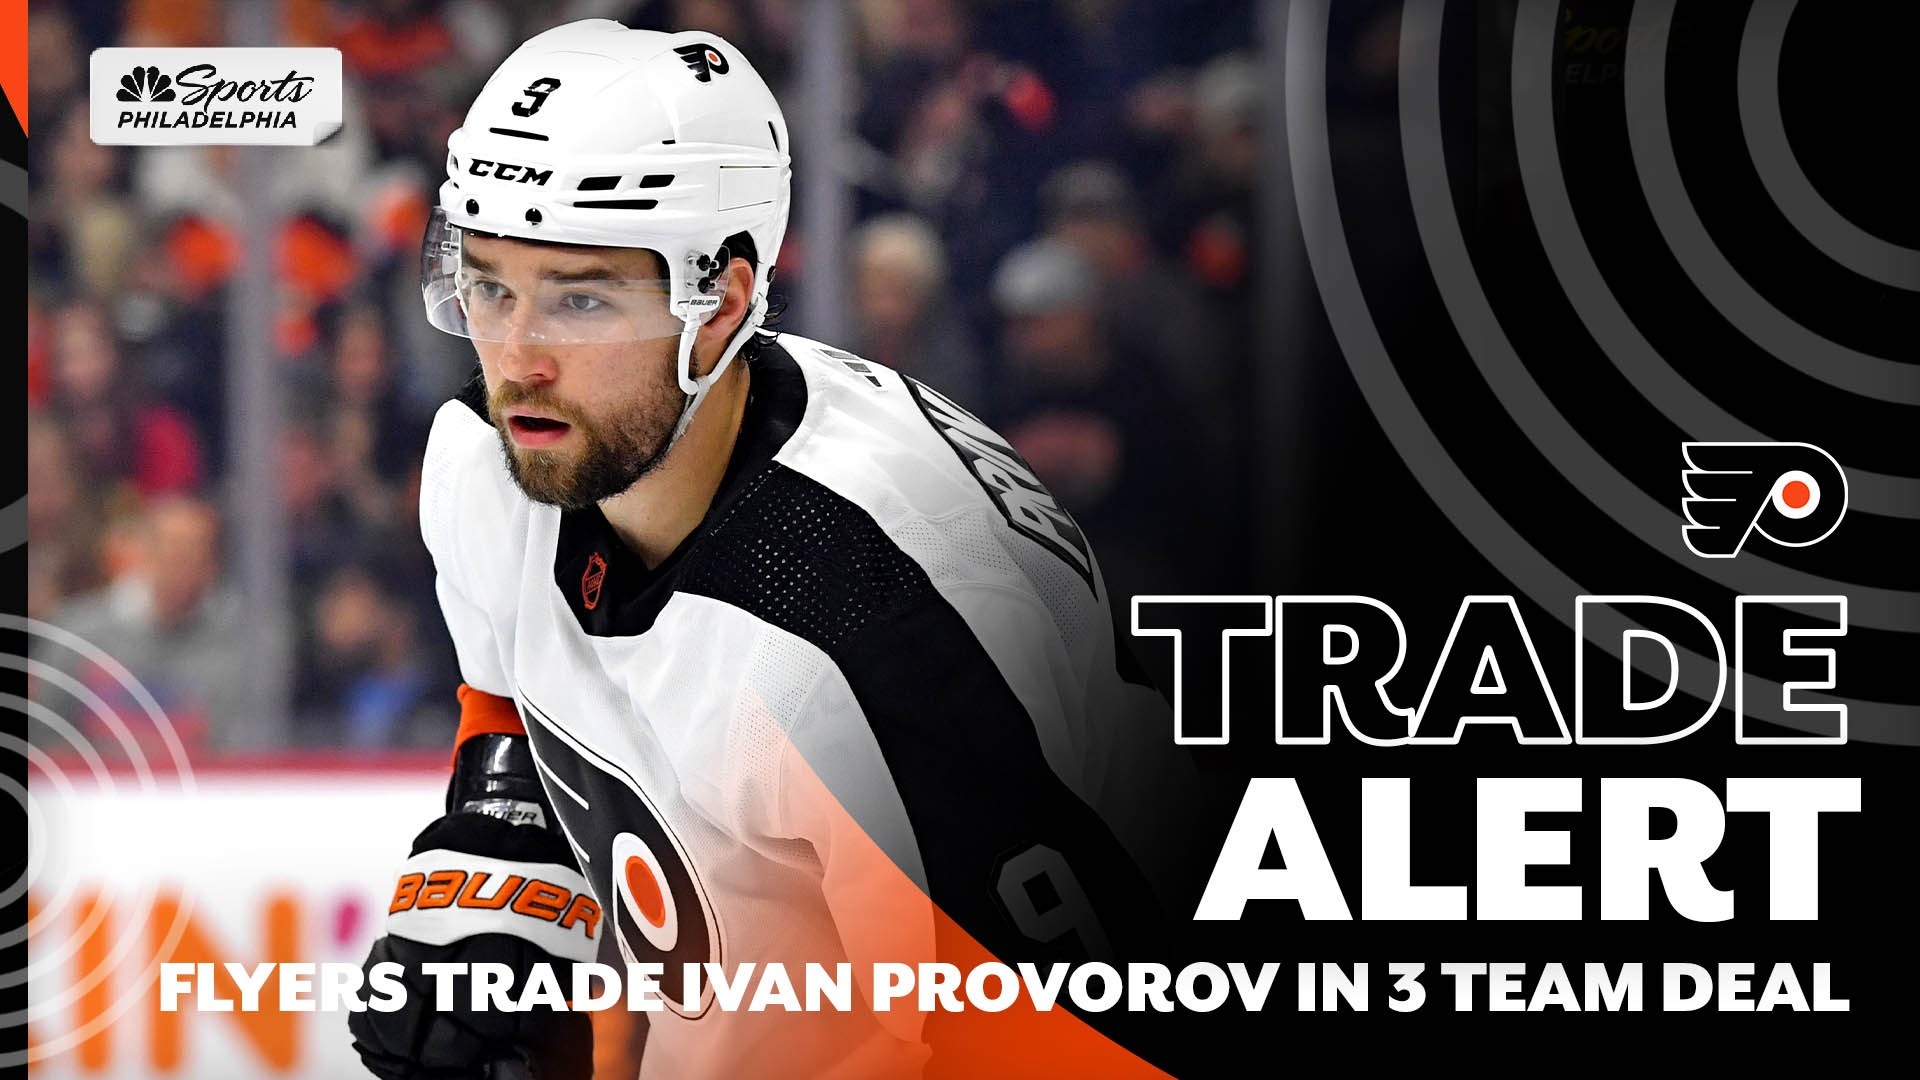 ESPN - Philadelphia Flyers defenseman Ivan Provorov has been